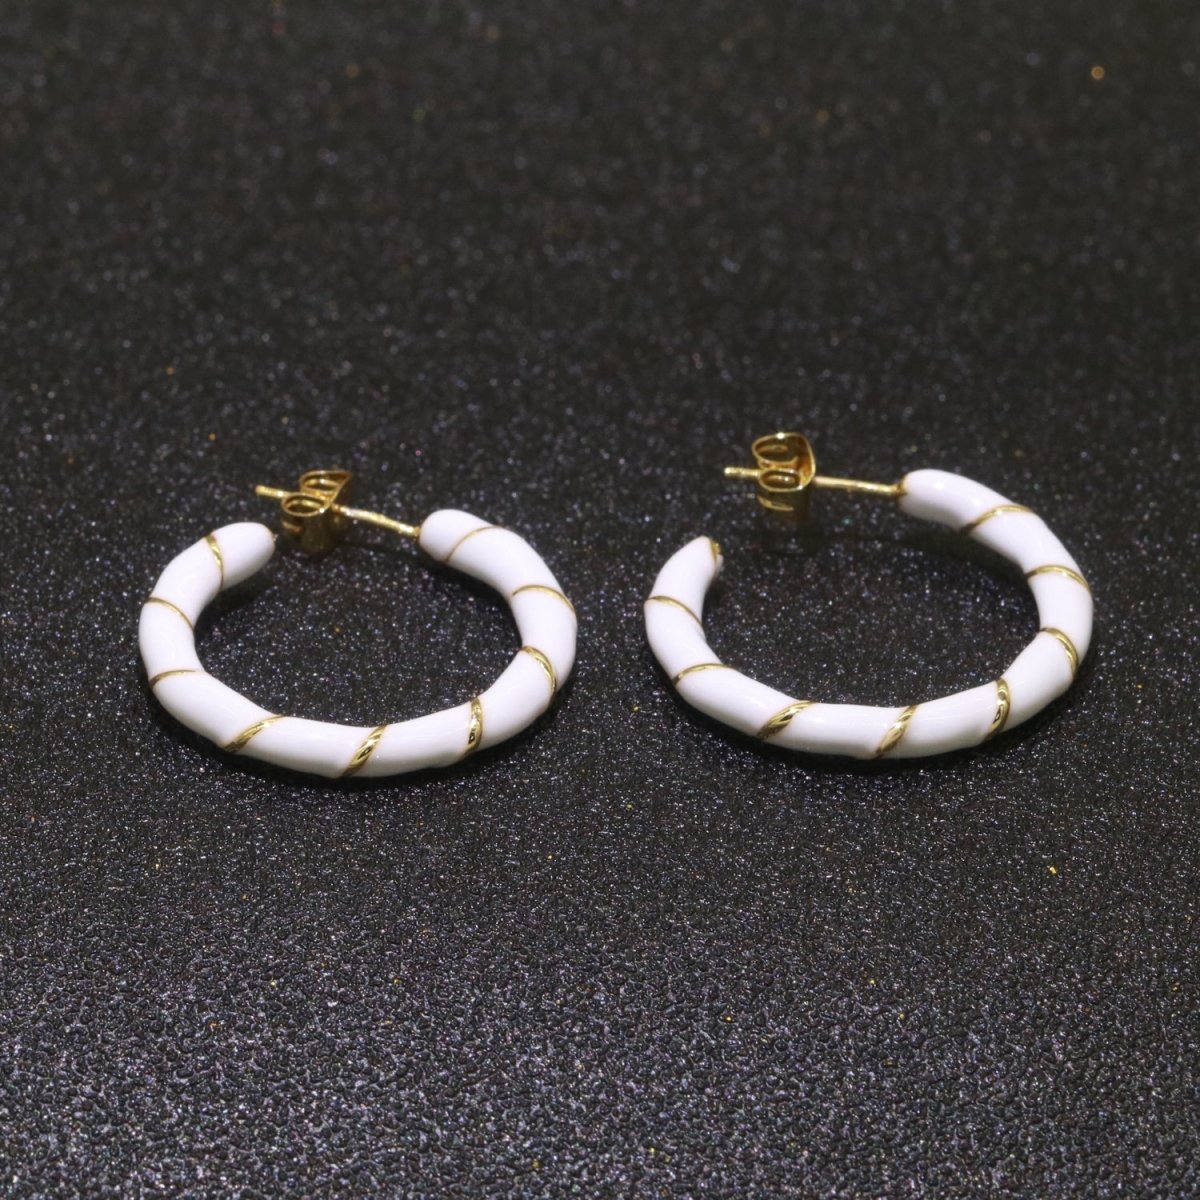 White Enamel Hoop Earring with Gold Swirl 26mm Hoop earring Jewelry Gift T-009 - DLUXCA